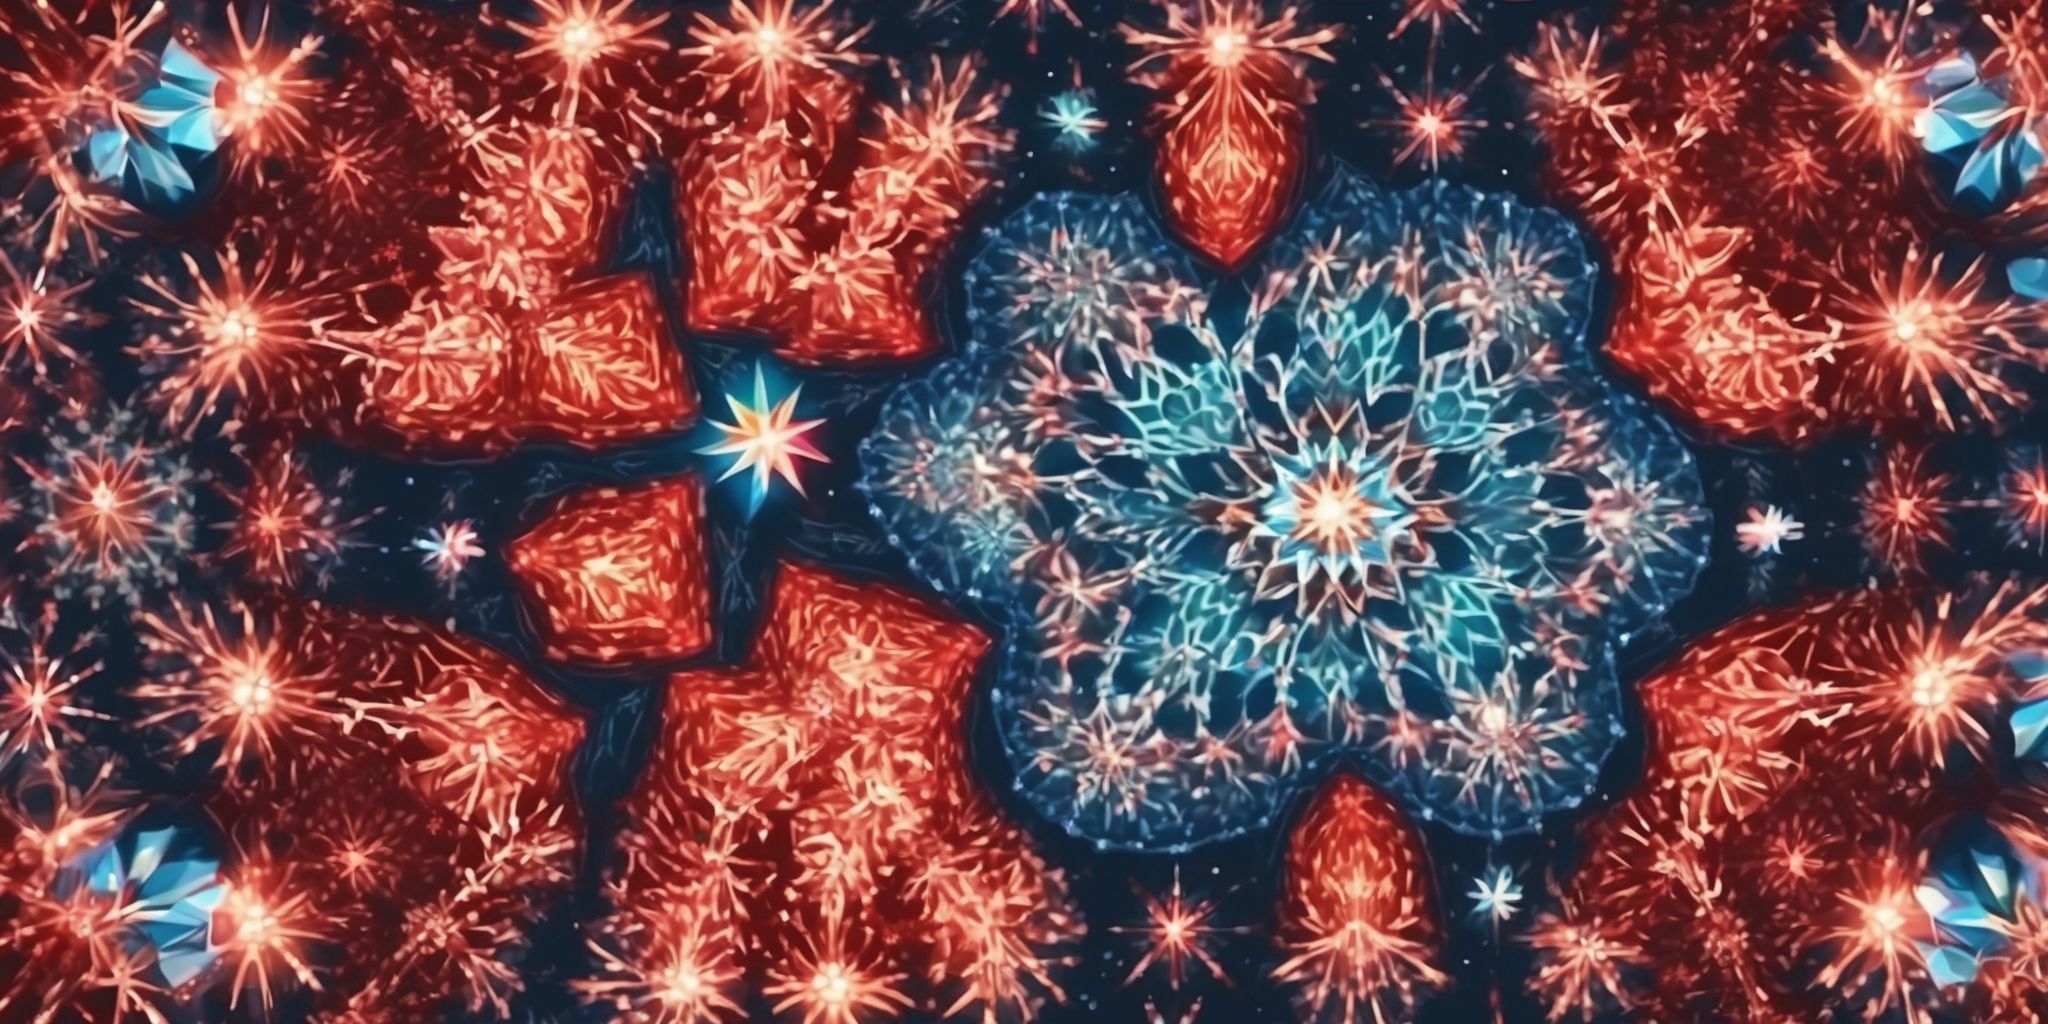 Kaleidoscope in realistic Christmas style